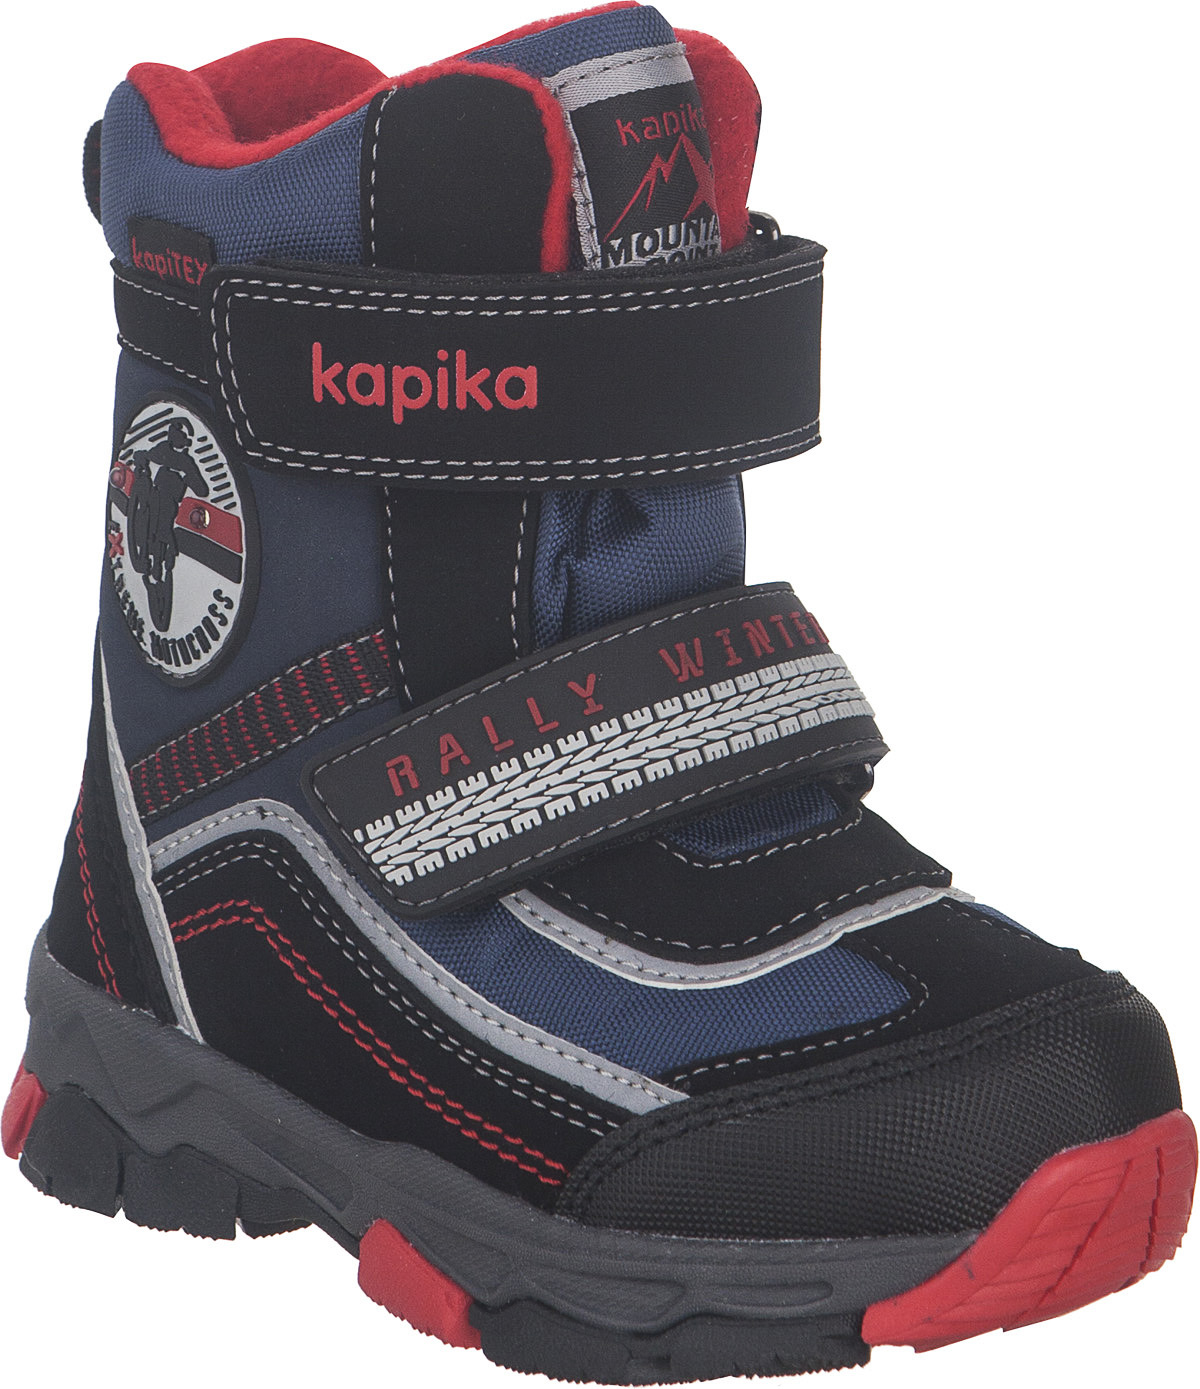 Ботинки для мальчика Kapika KapiTEX, цвет: черный, синий, красный. 41230-2. Размер 23